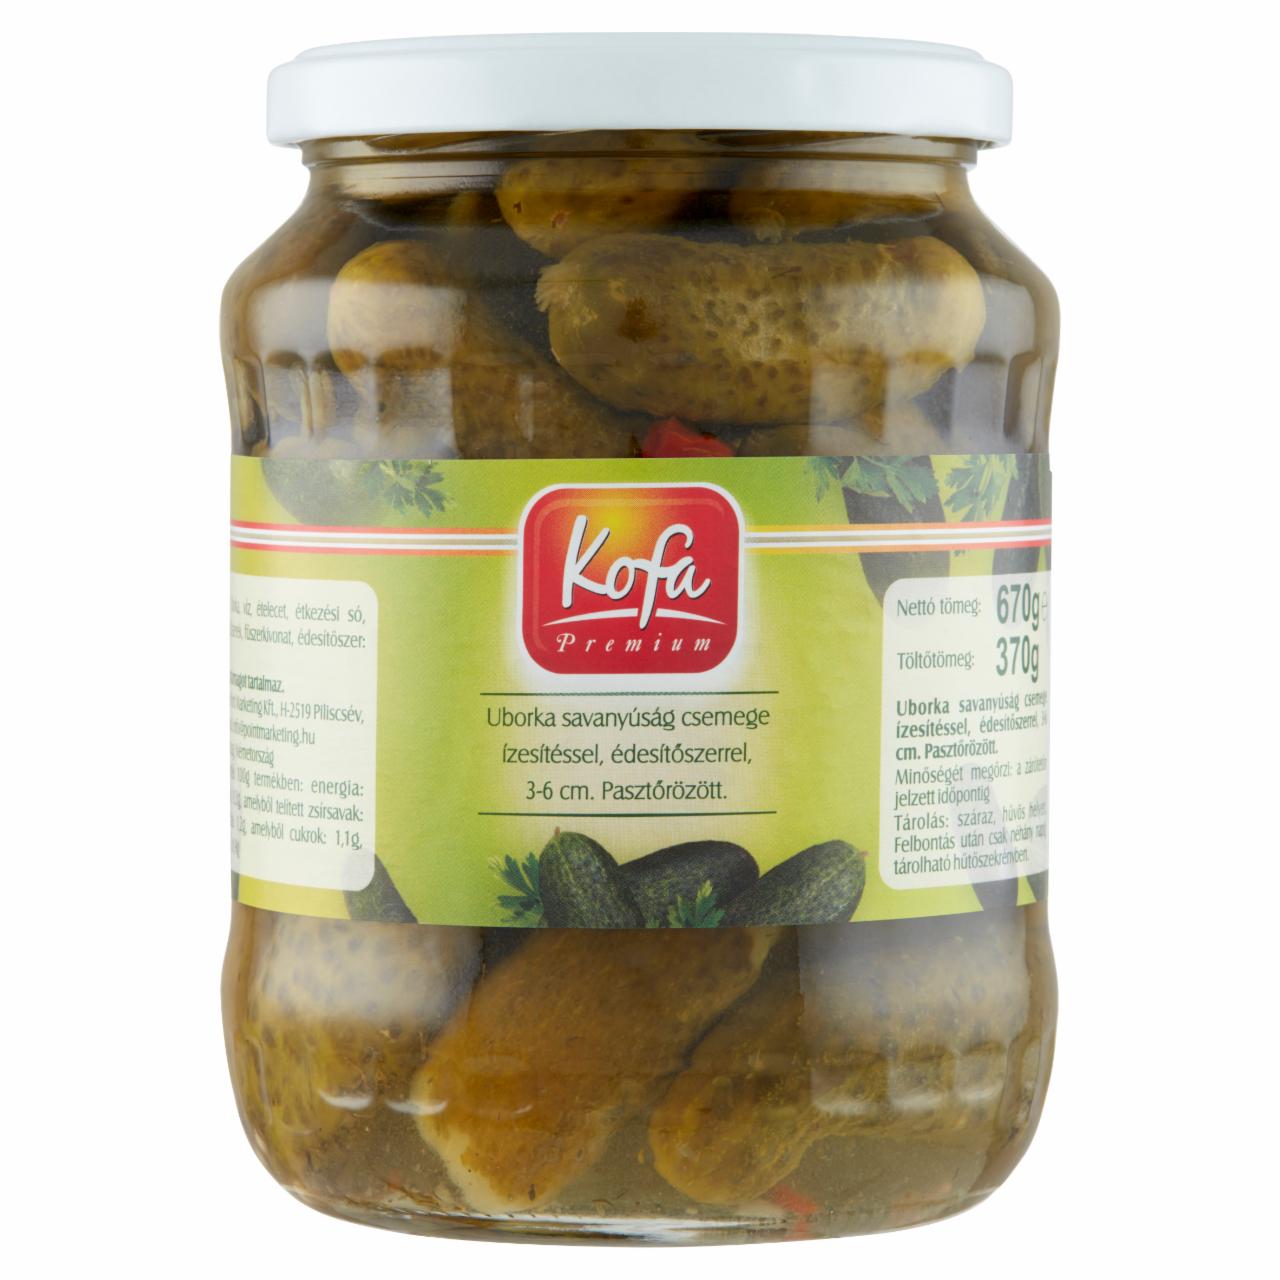 Képek - Kofa Premium uborka savanyúság csemege ízesítéssel édesítőszerrel 3-6 cm 670 g